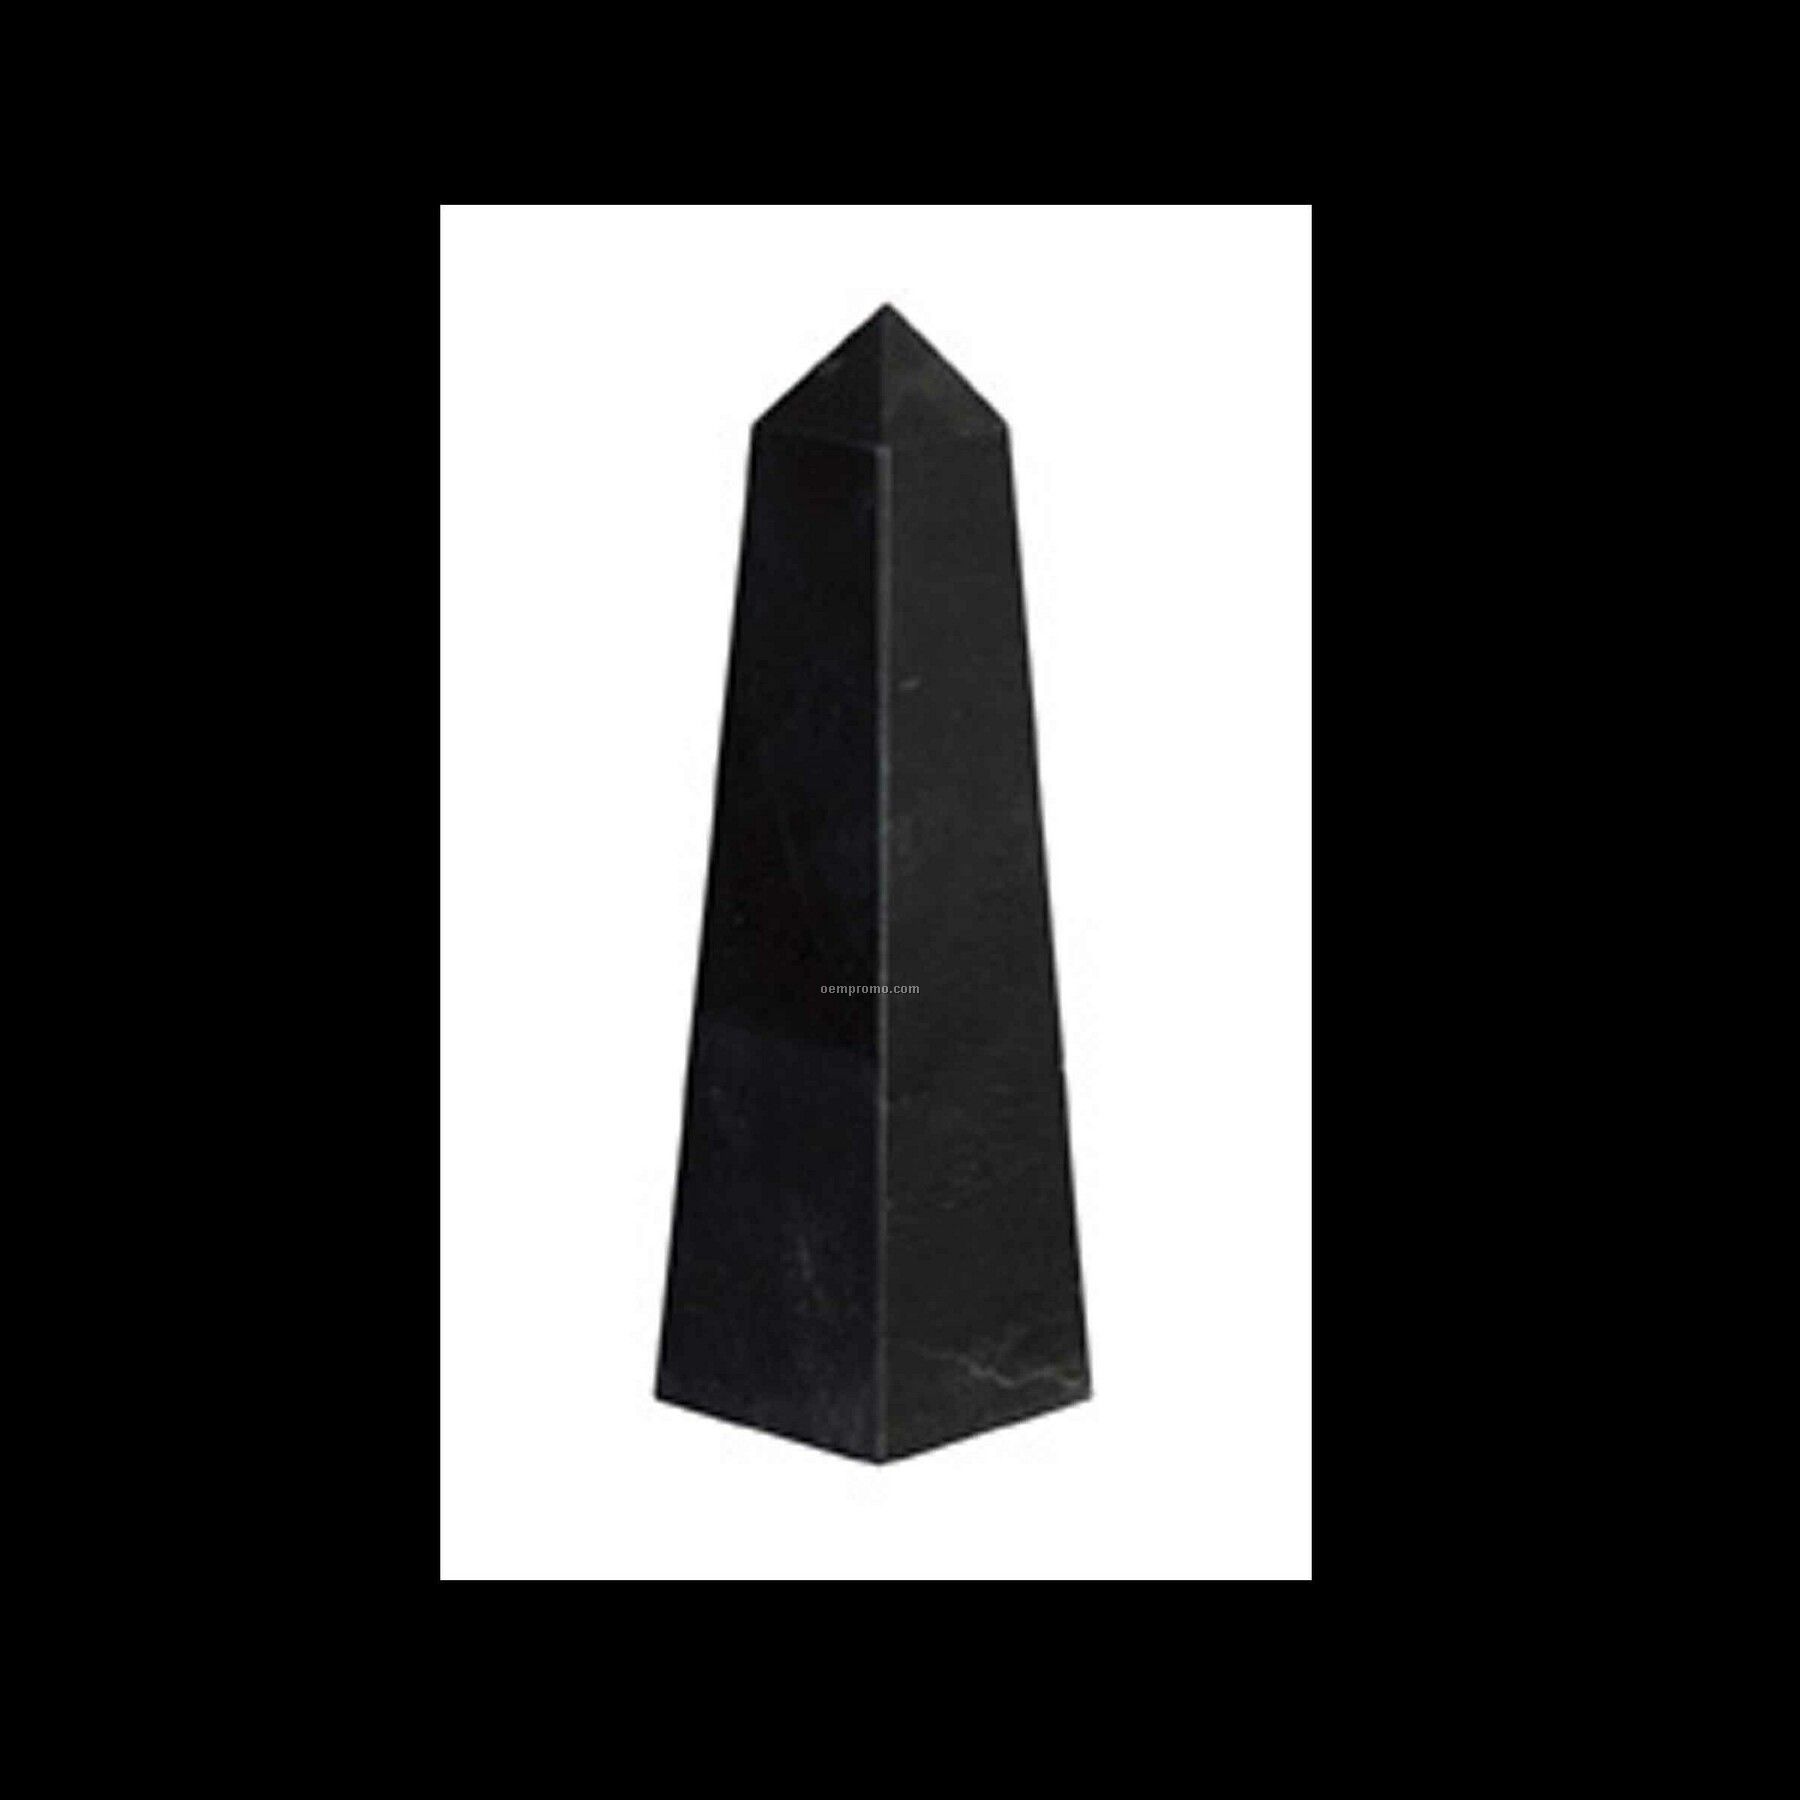 Small Obelisk Pinnacle Award